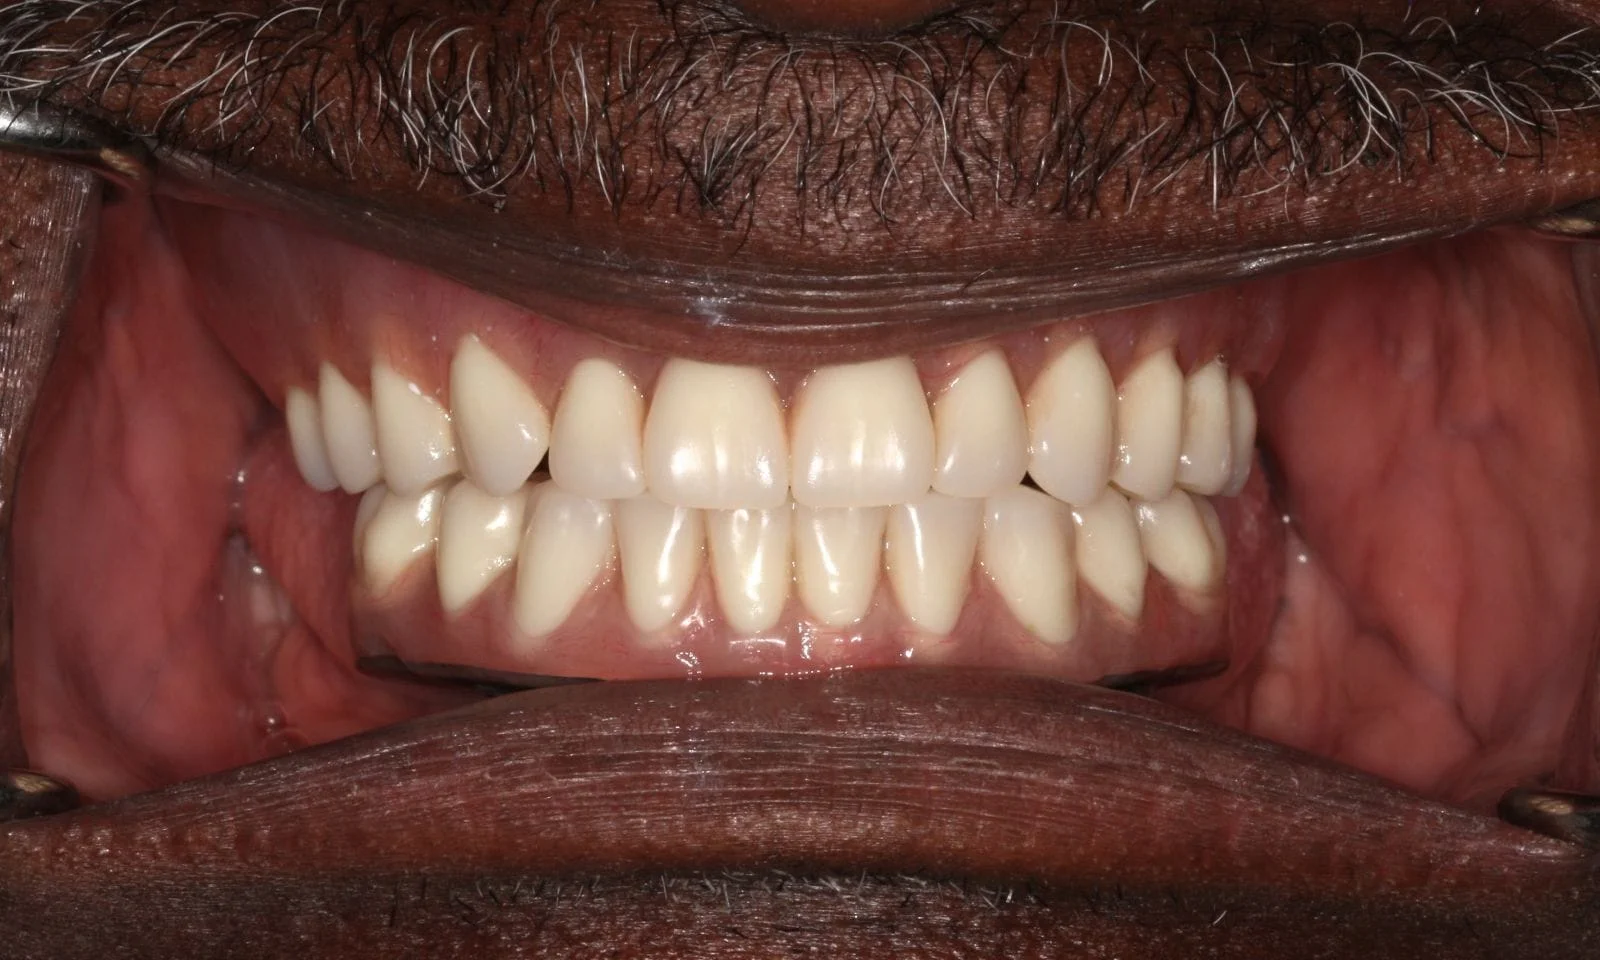 Implant Denture - After